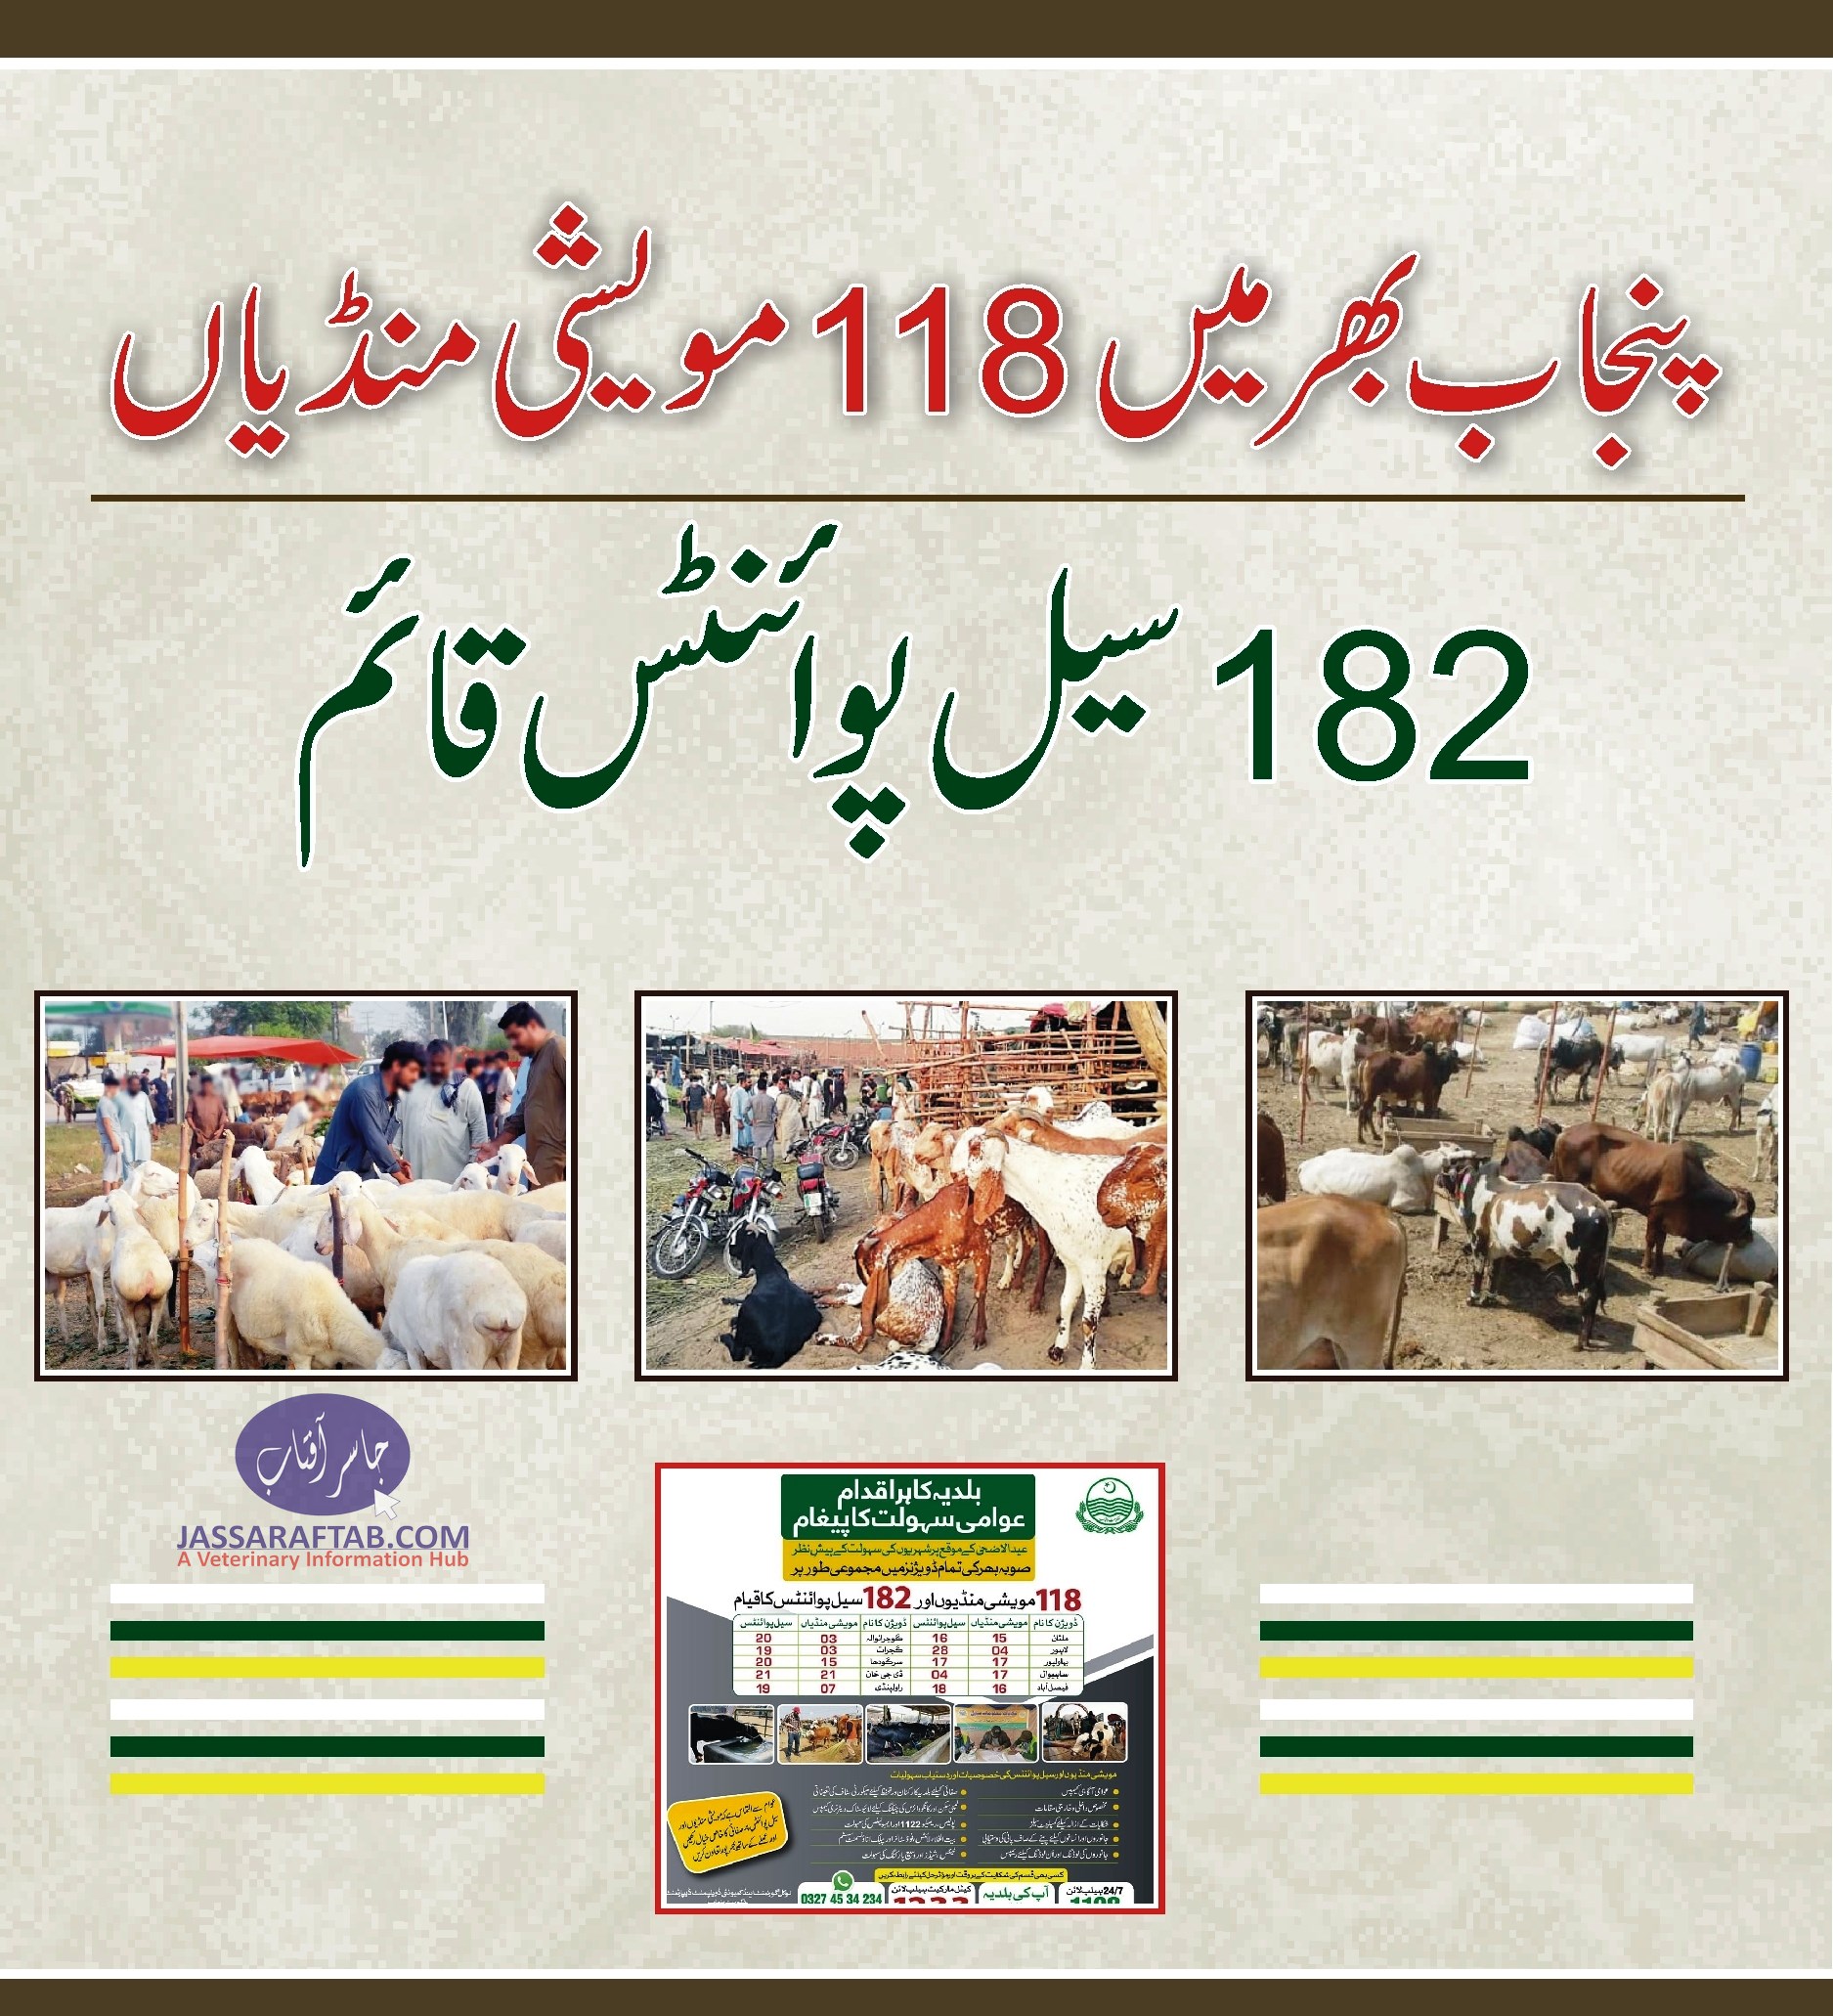 پنجاب بھر میں 118 مویشی منڈیاں اور 182 سیل پوائنٹس قائم